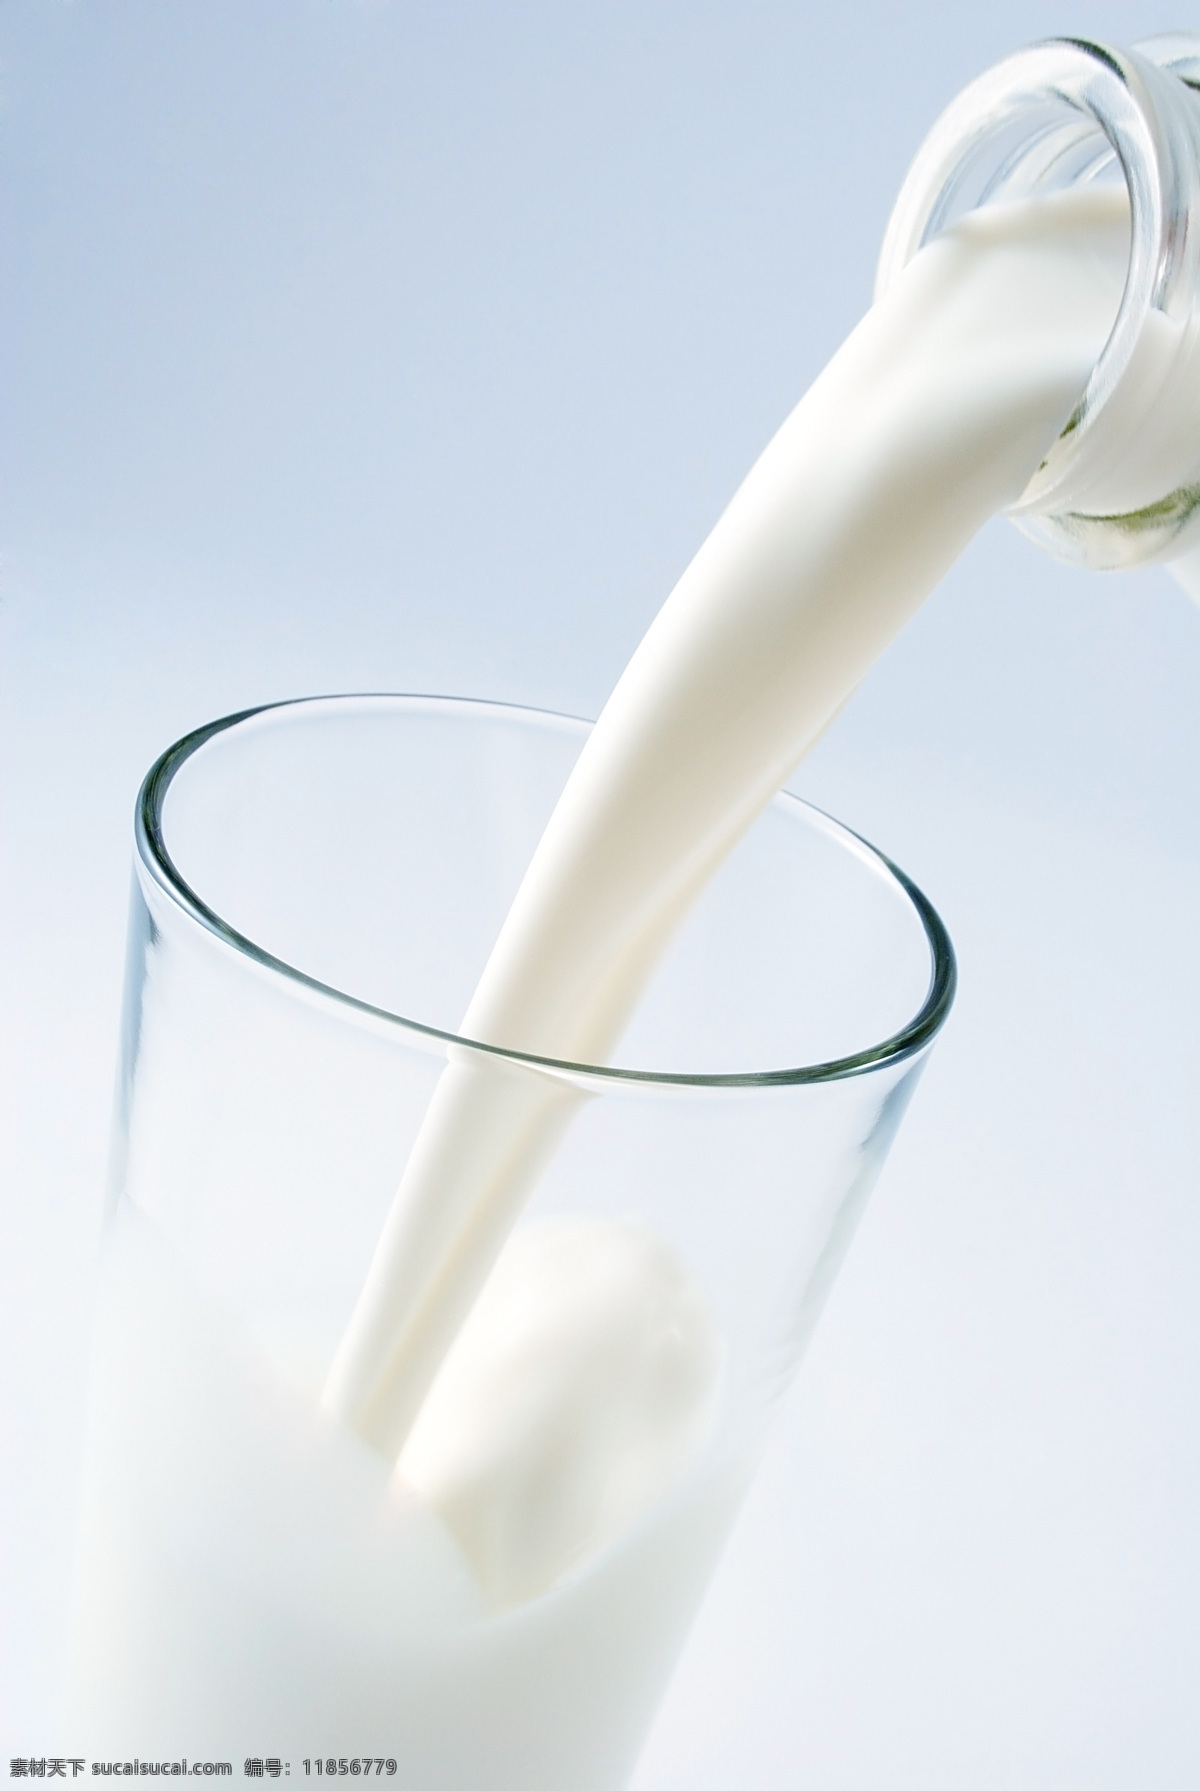 早餐牛奶 奶粉 牛乳 酸牛奶 酸奶 优酸乳 鲜牛奶 饮品 饮料 牛奶广告 milk 牛奶杯 容器 牛奶容器 生活百科 生活用品